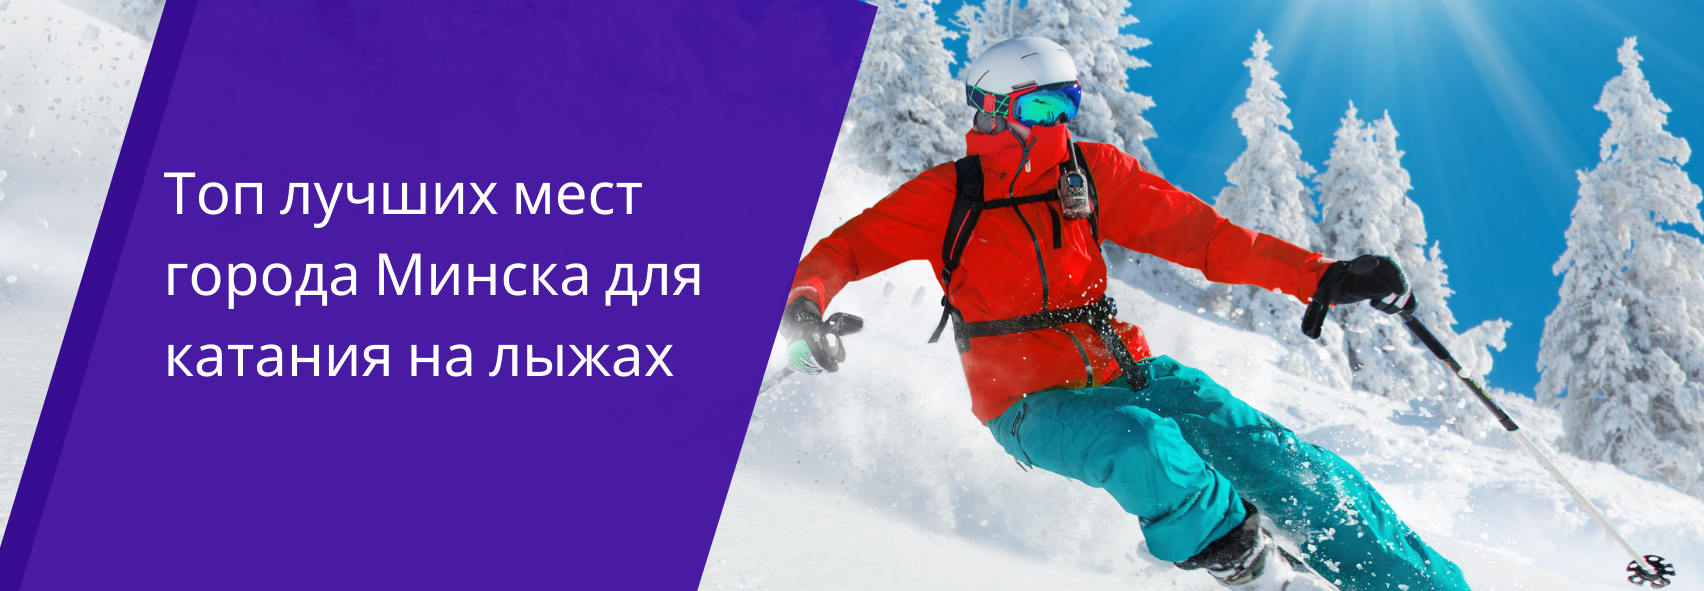 Где в Минске можно покататься на лыжах